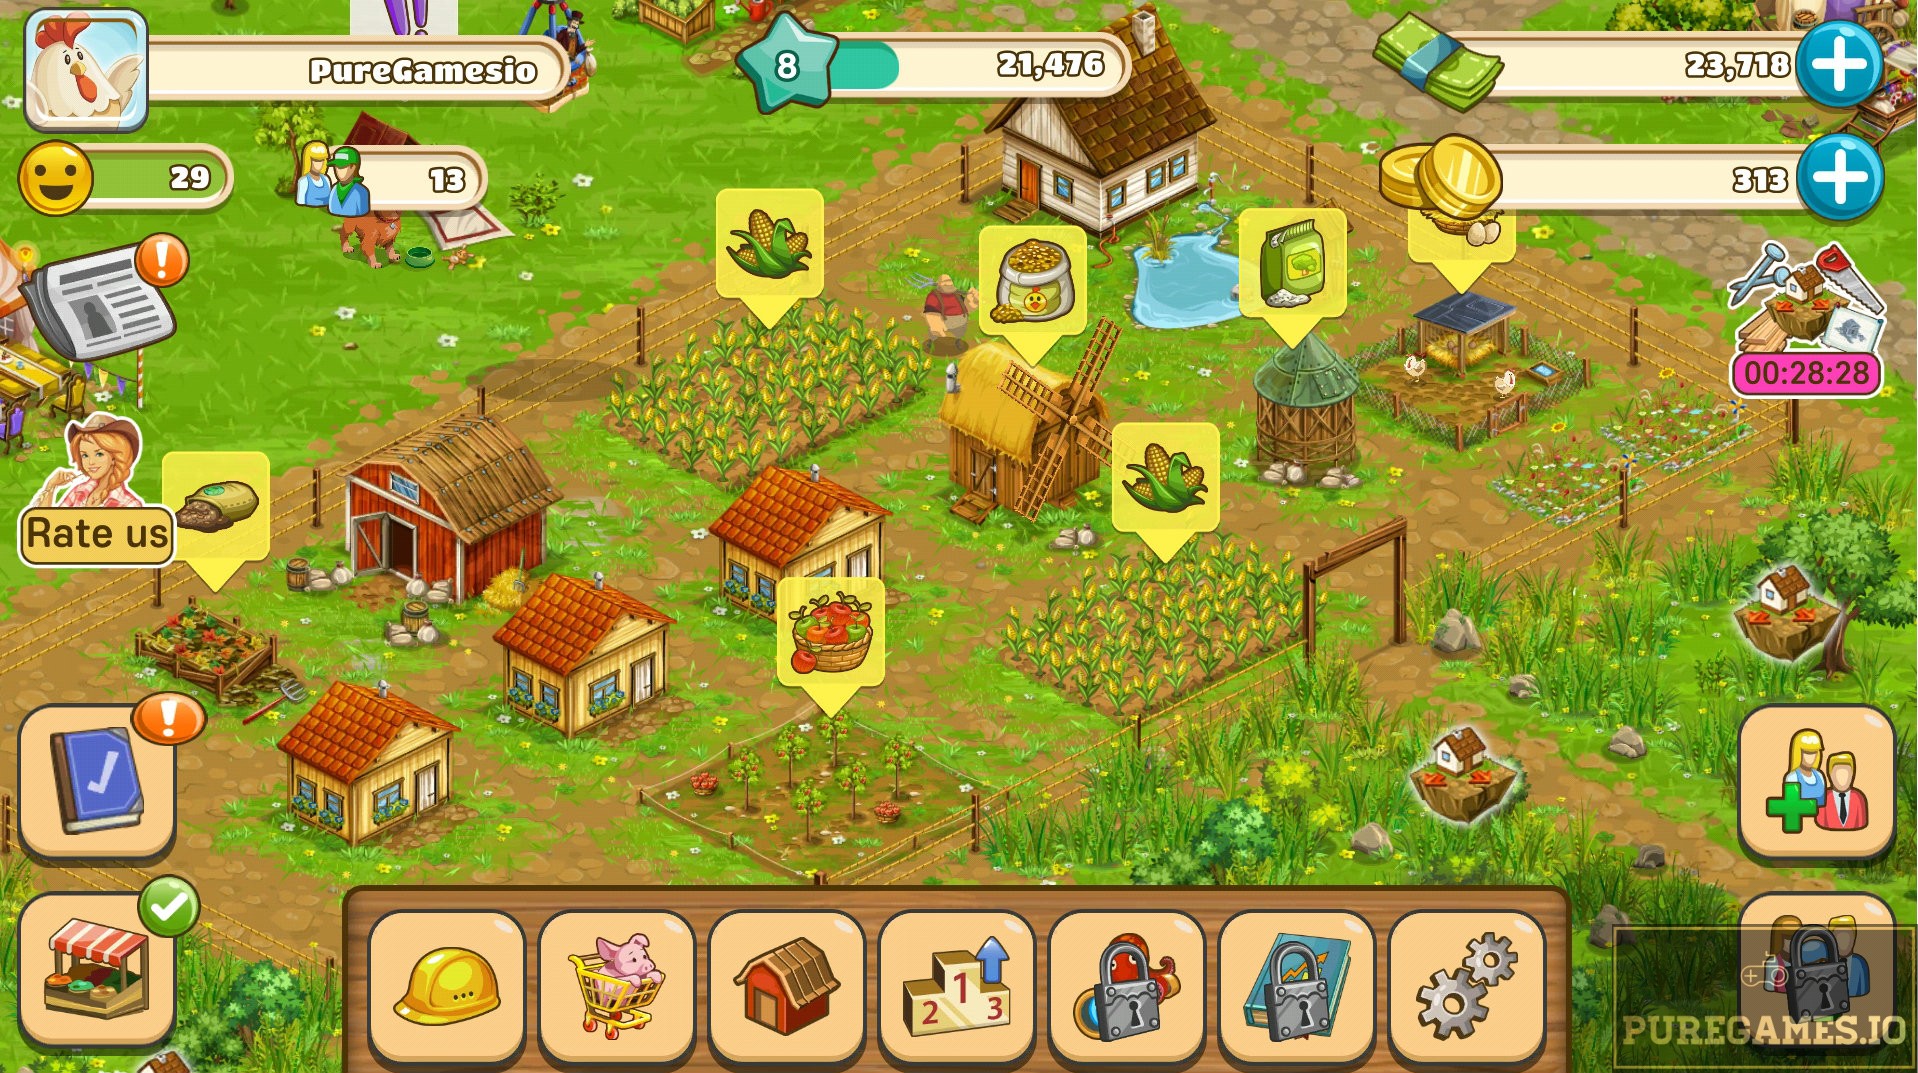 big farm mobile harvest game update